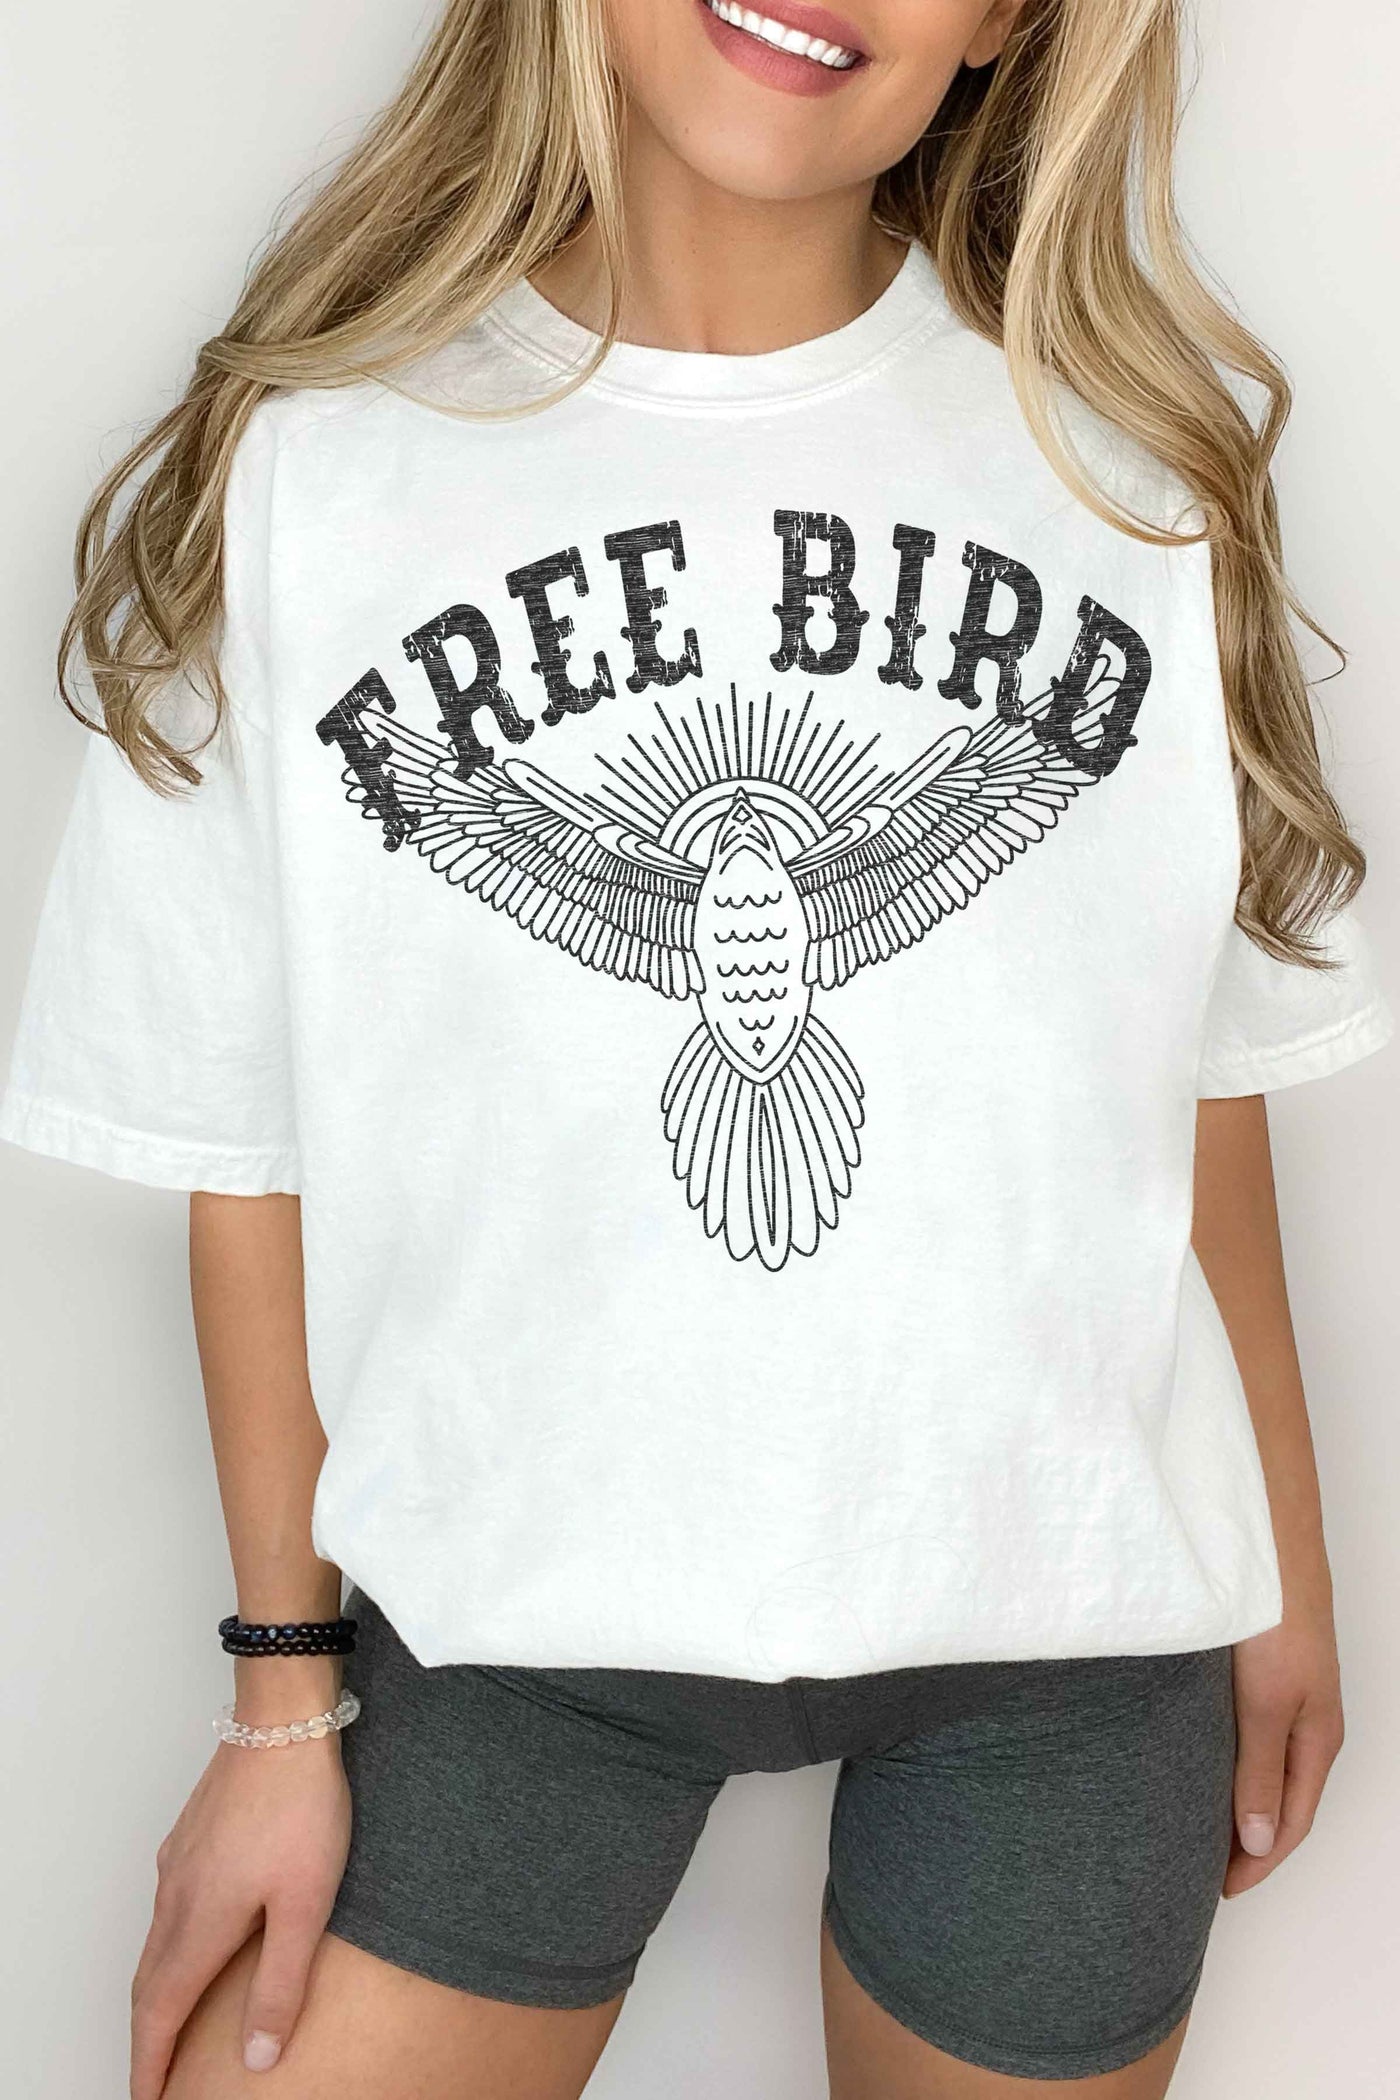 free bird tee